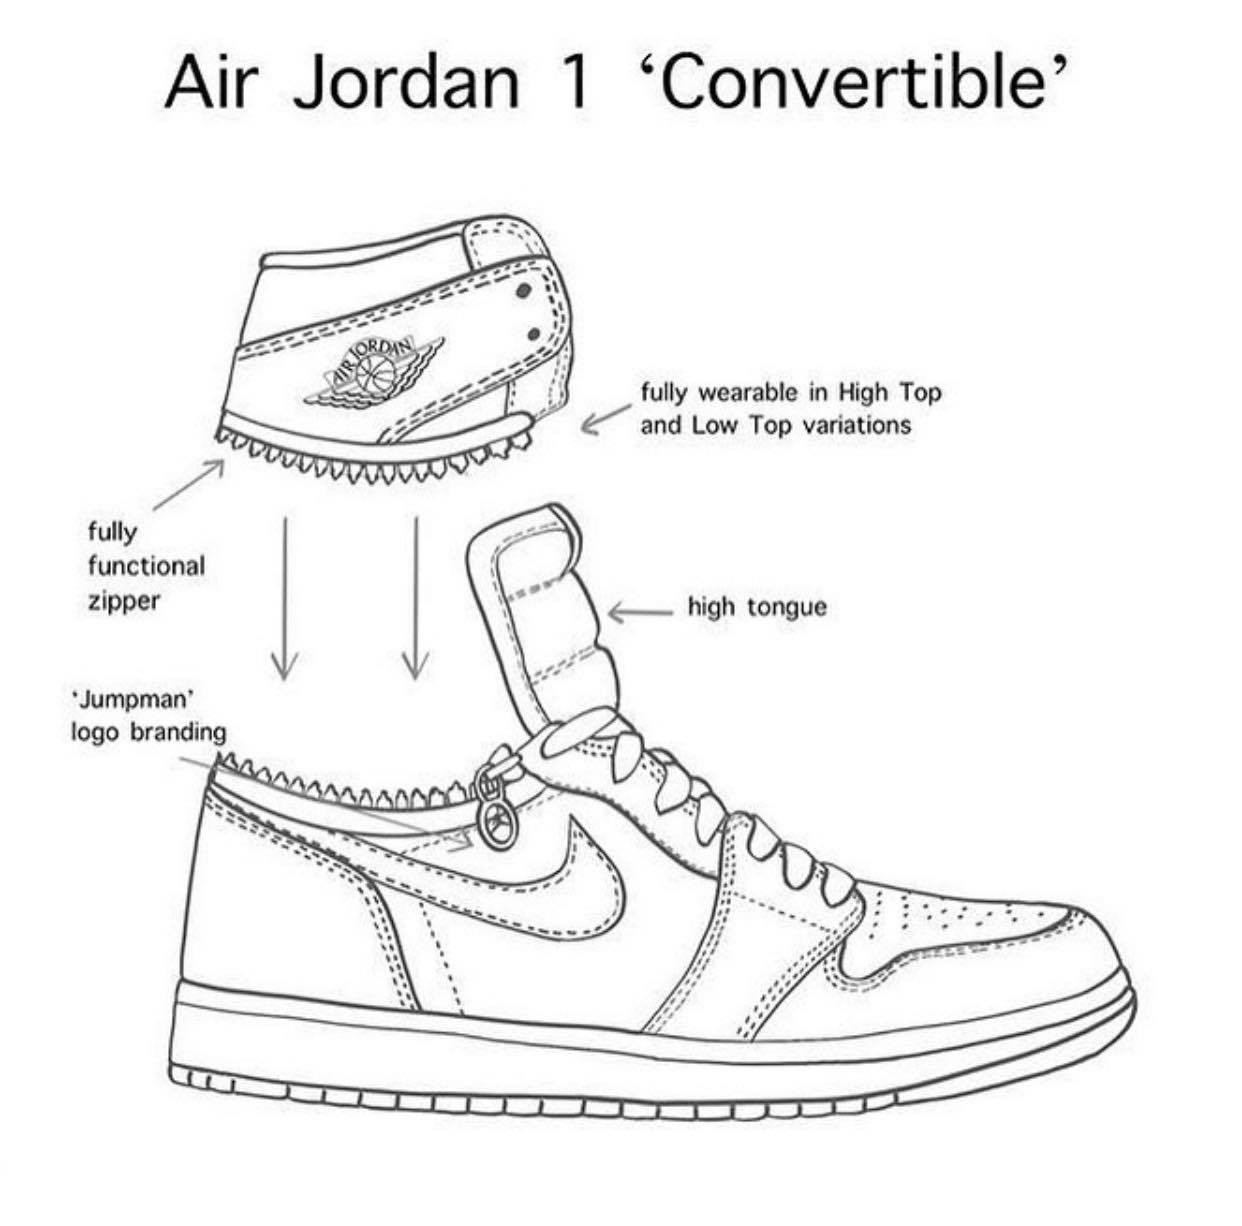 Giày Jordan 1: Giày Jordan 1 từng được Michael Jordan khoác lên trong các trận đấu lớn, hiện nay đã trở thành một biểu tượng của làng thời trang và giày thể thao. Đừng bỏ lỡ cơ hội xem những đôi giày Jordan 1 đẹp mắt trong hình ảnh liên quan và đến với chúng tôi để sở hữu cho riêng mình một đôi nhé!